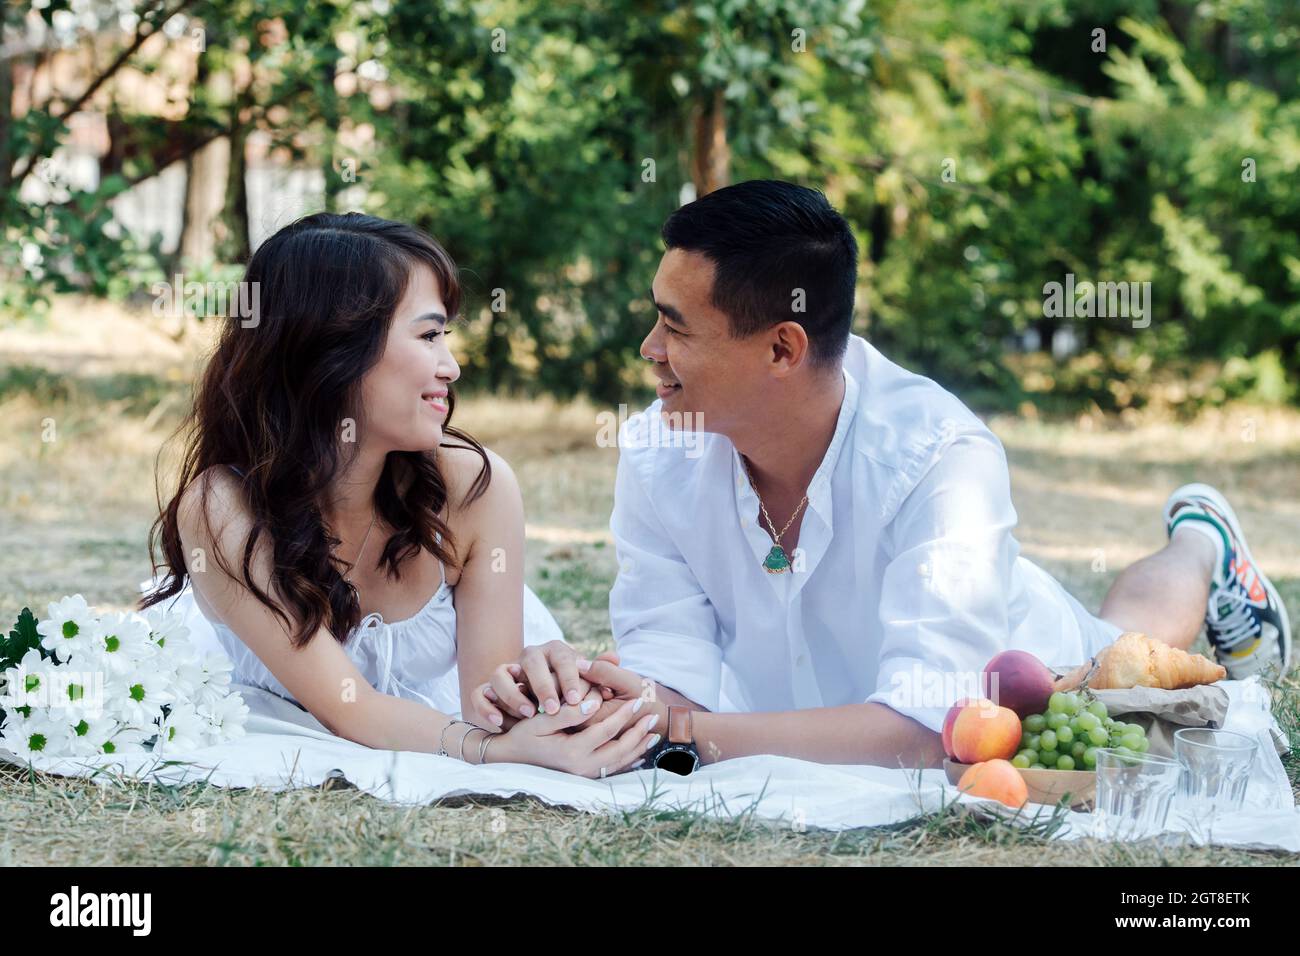 Couple asiatique aimant se happant pique-nique dans un parc, allongé sur leurs estomacs, regardant l'un l'autre. Homme et femme se reposant dans des vêtements blancs à l'ombre d'un arbre. Banque D'Images